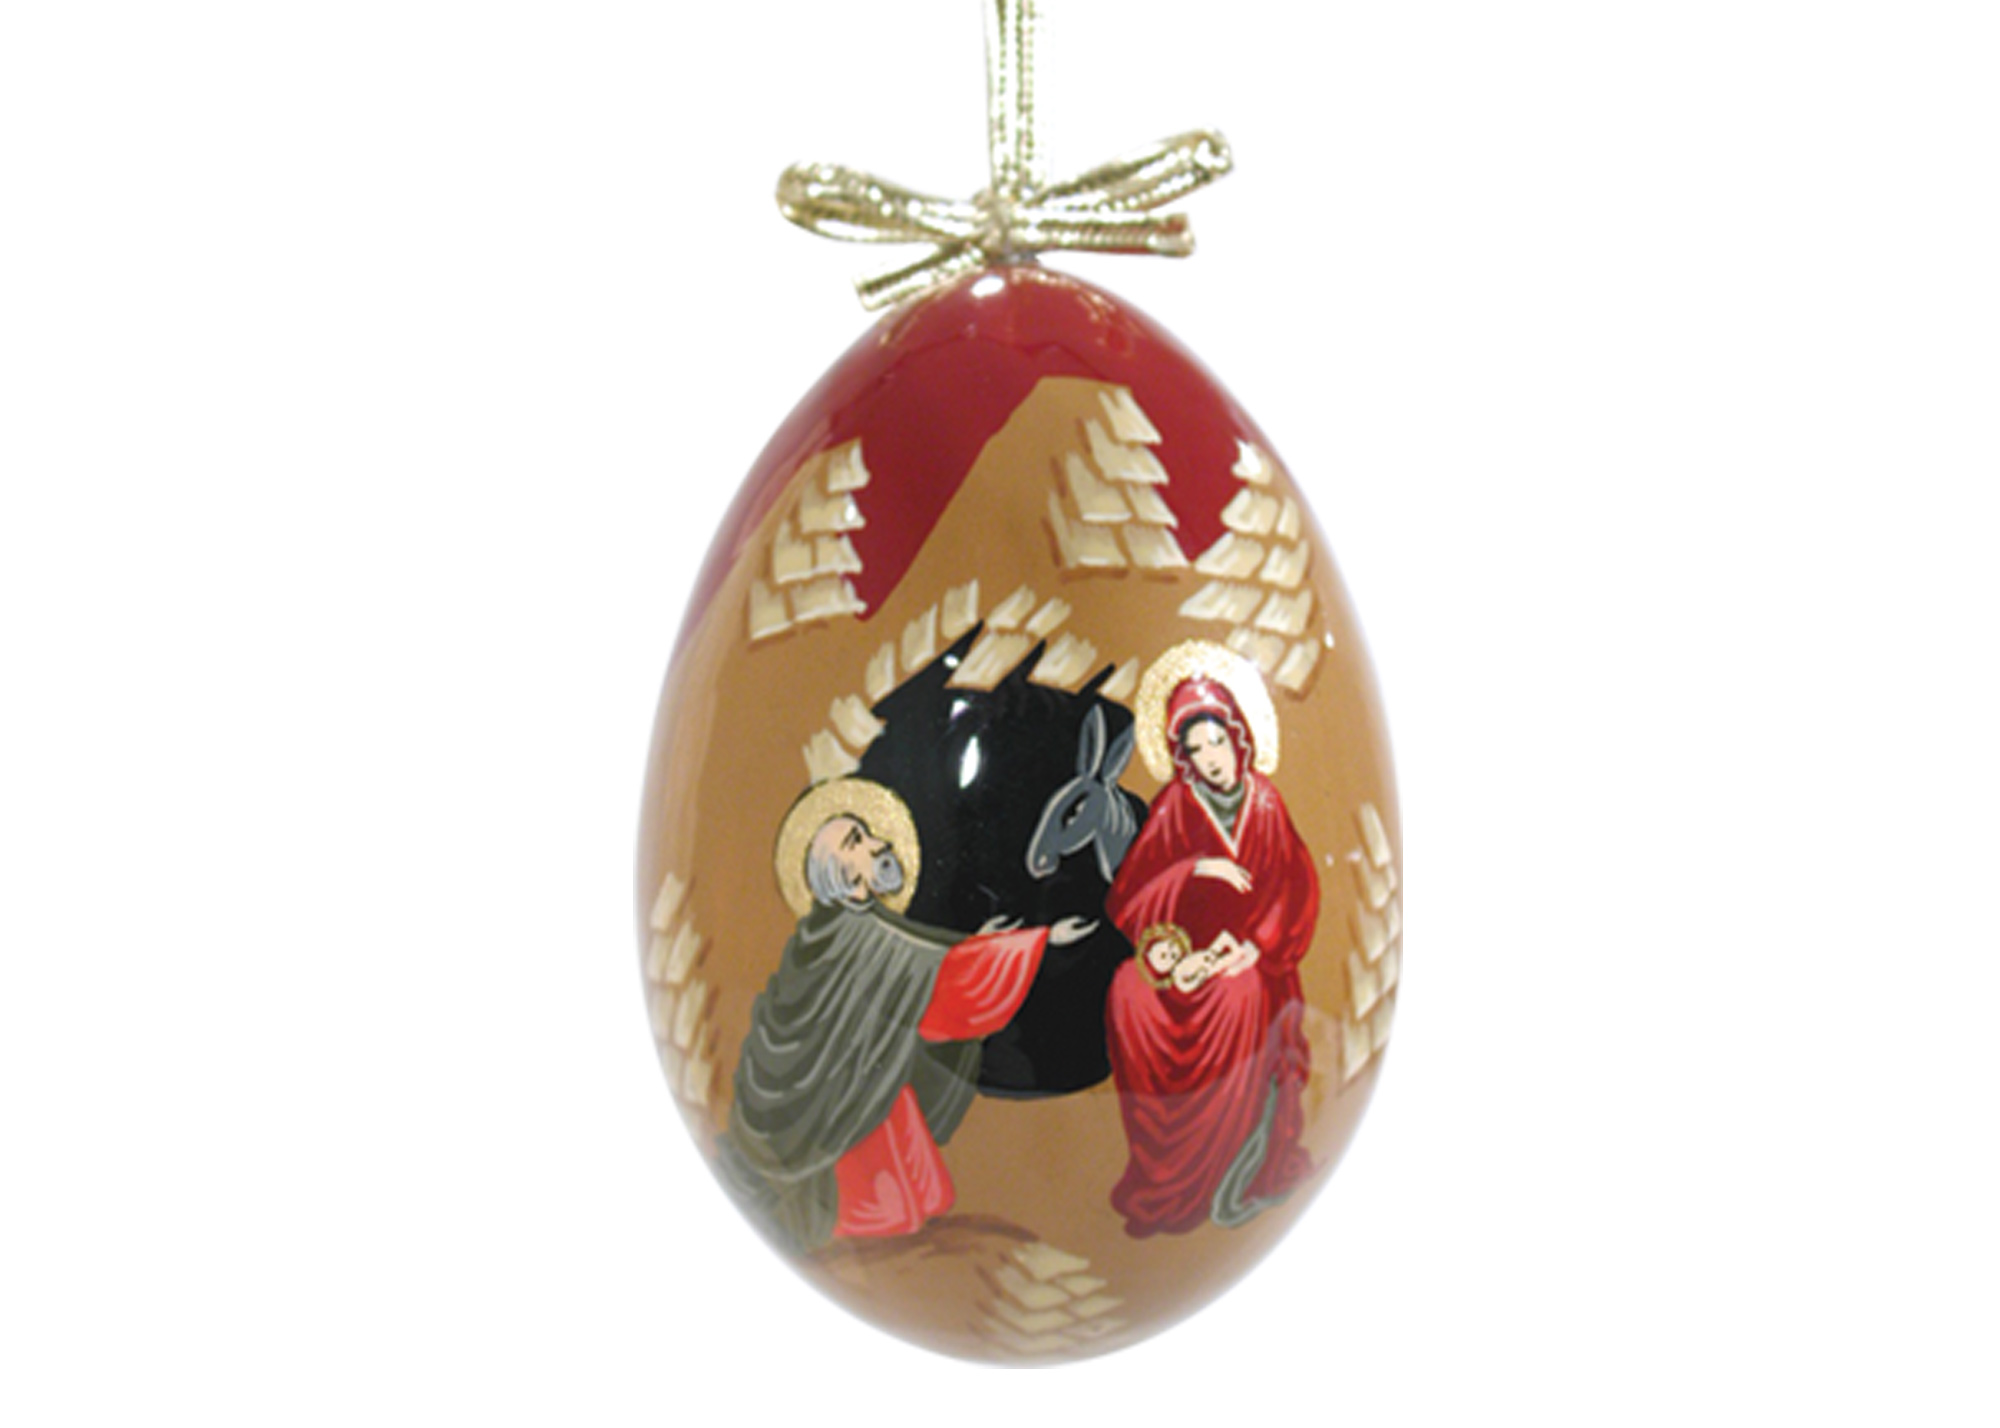 Buy Елочное украшение "Рождество" (в византийском стиле) 7,5 см at GoldenCockerel.com